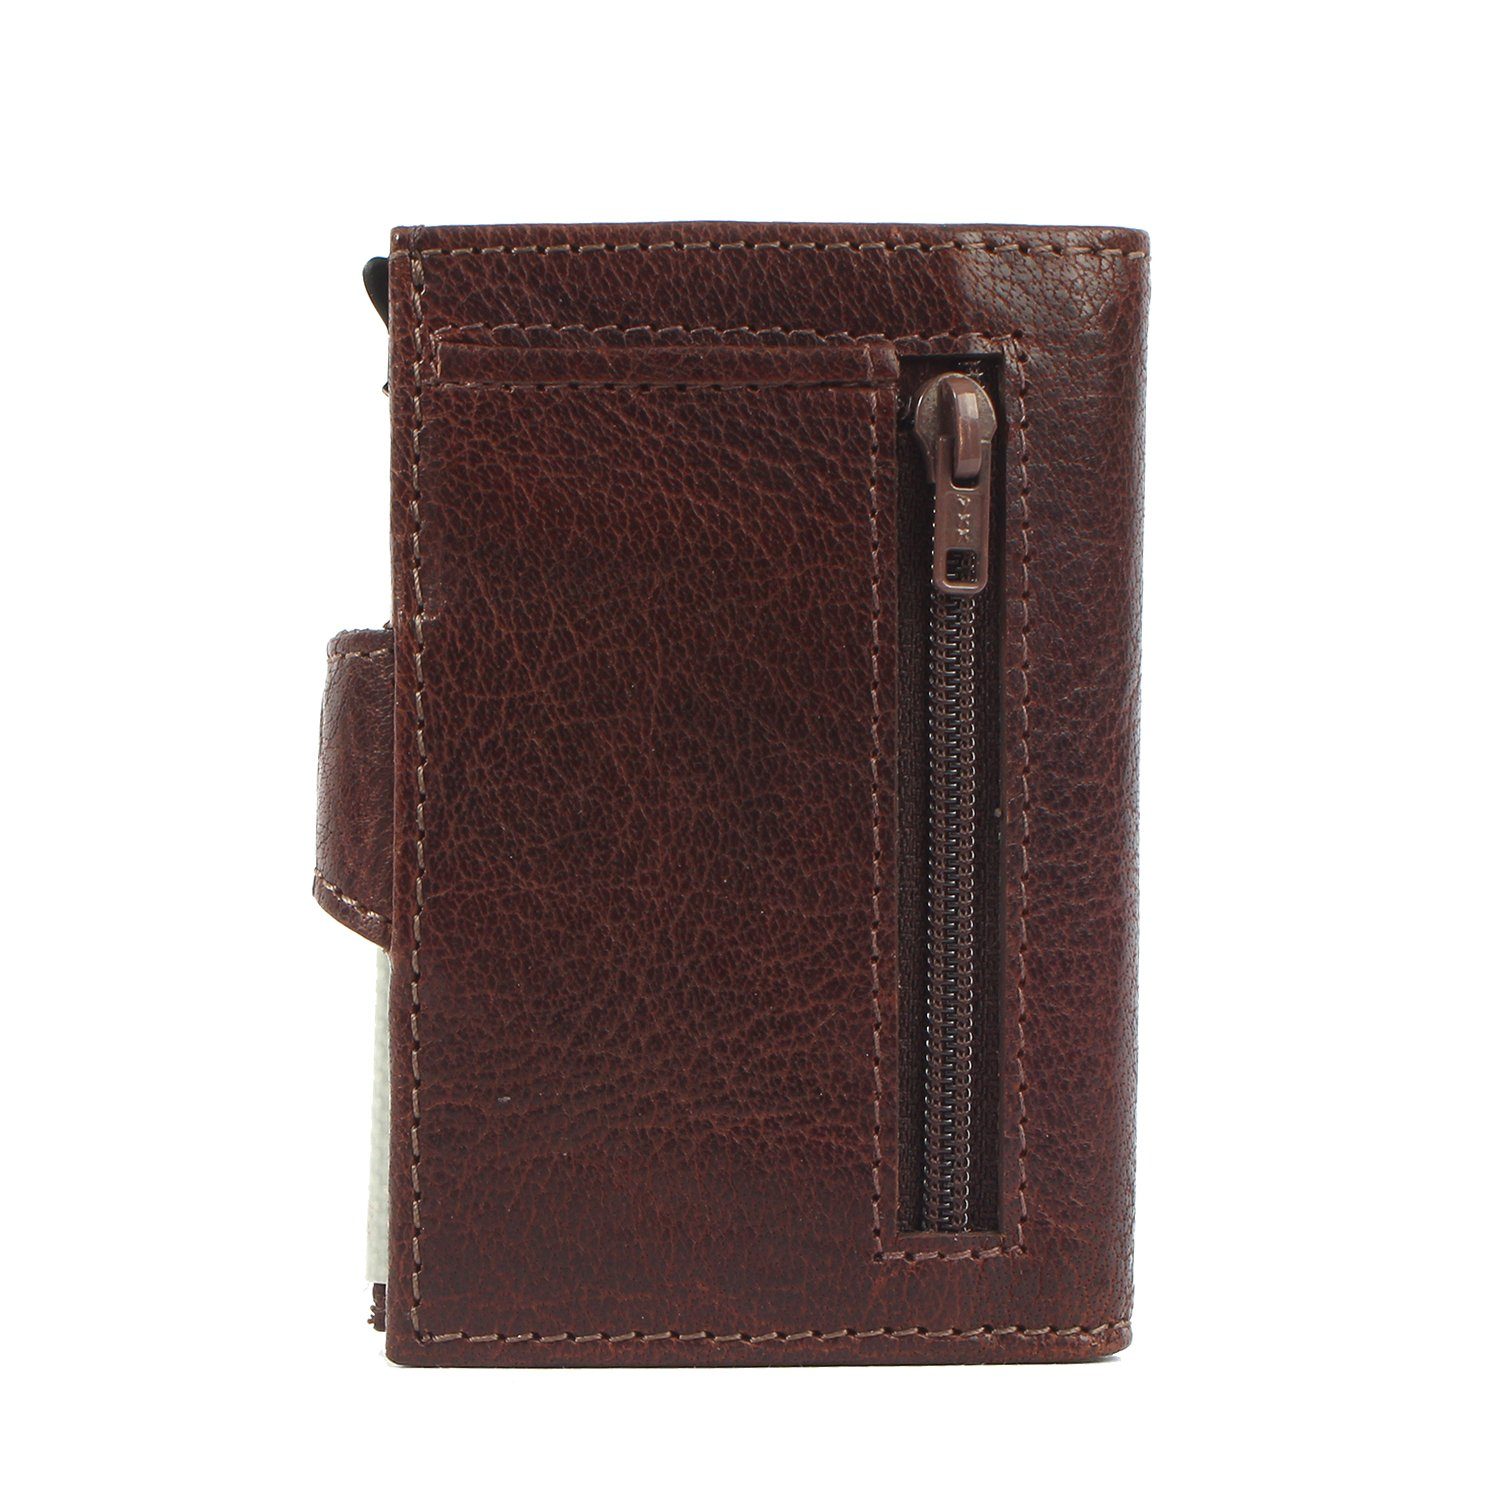 Margelisch Mini Geldbörse noonyu brown Upcycling single Leder leather, aus Kreditkartenbörse